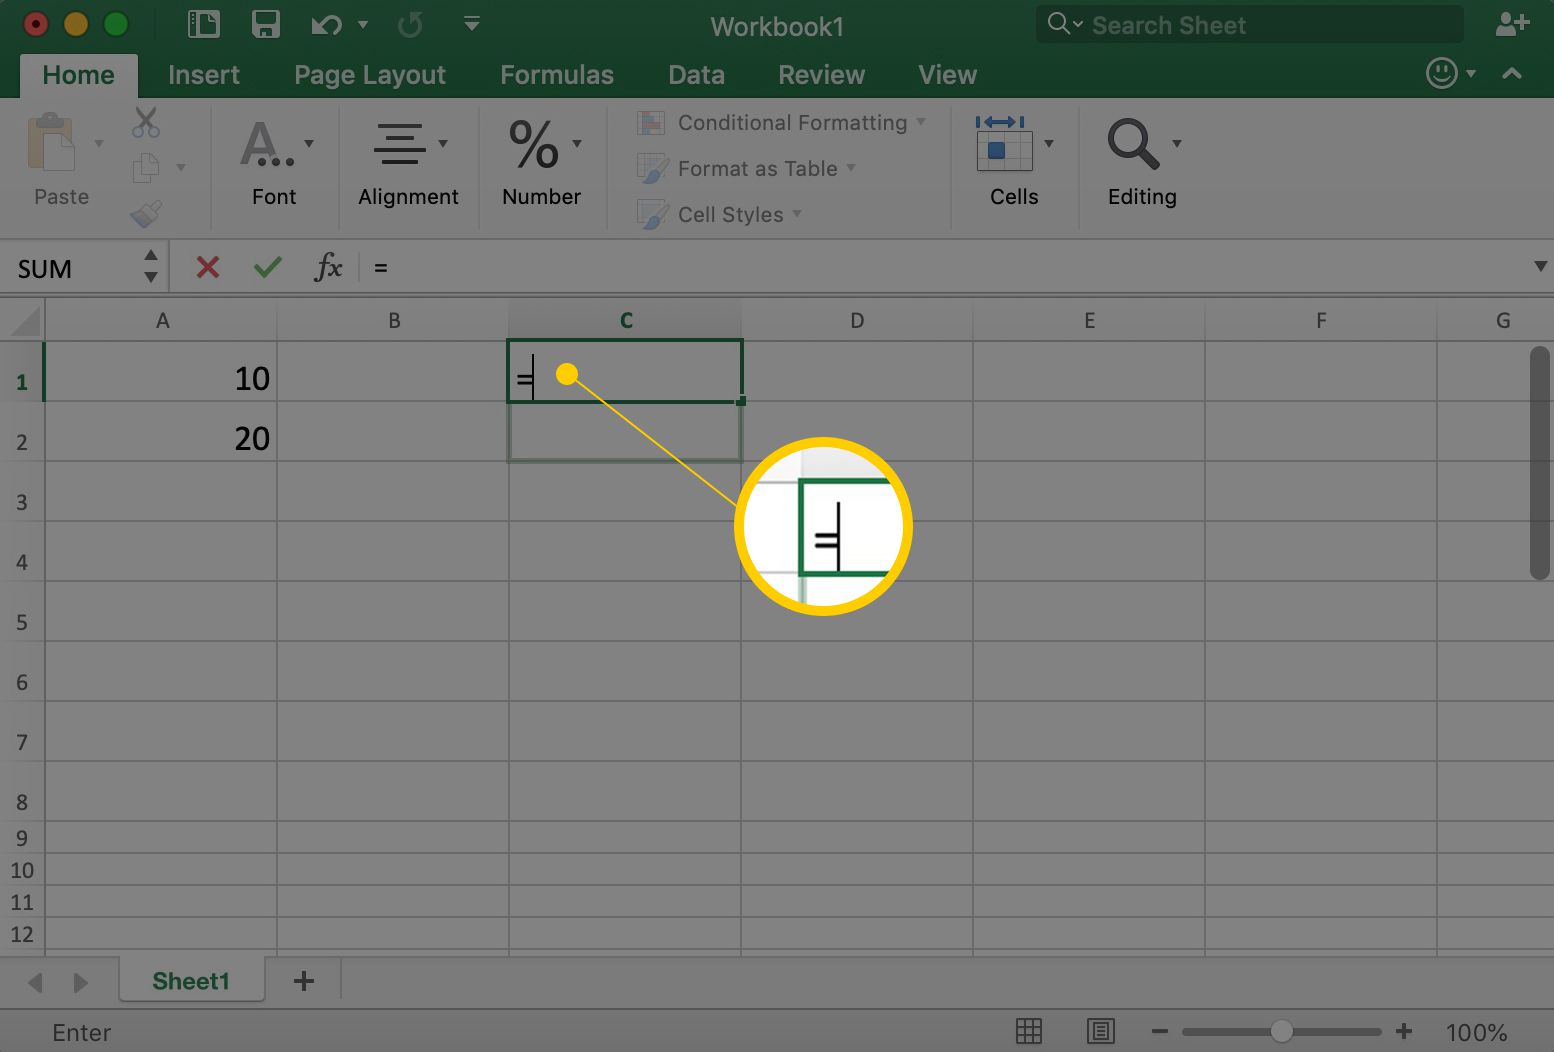 Excel zobrazuje buňku C1 se symbolem =